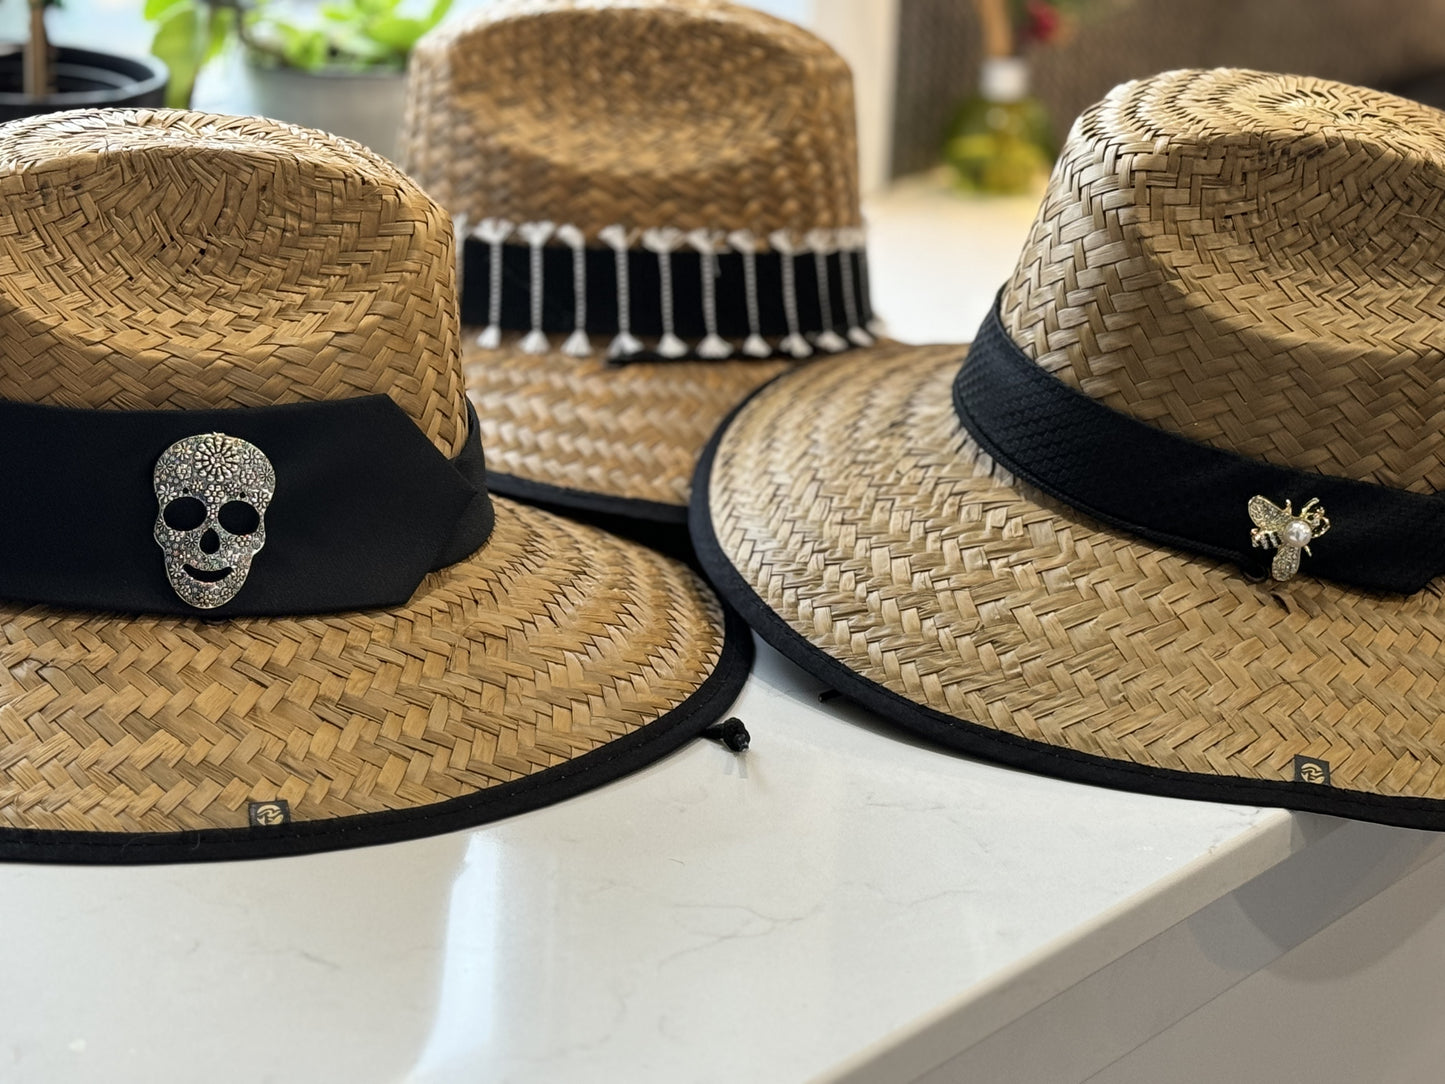 Island Girl Hats